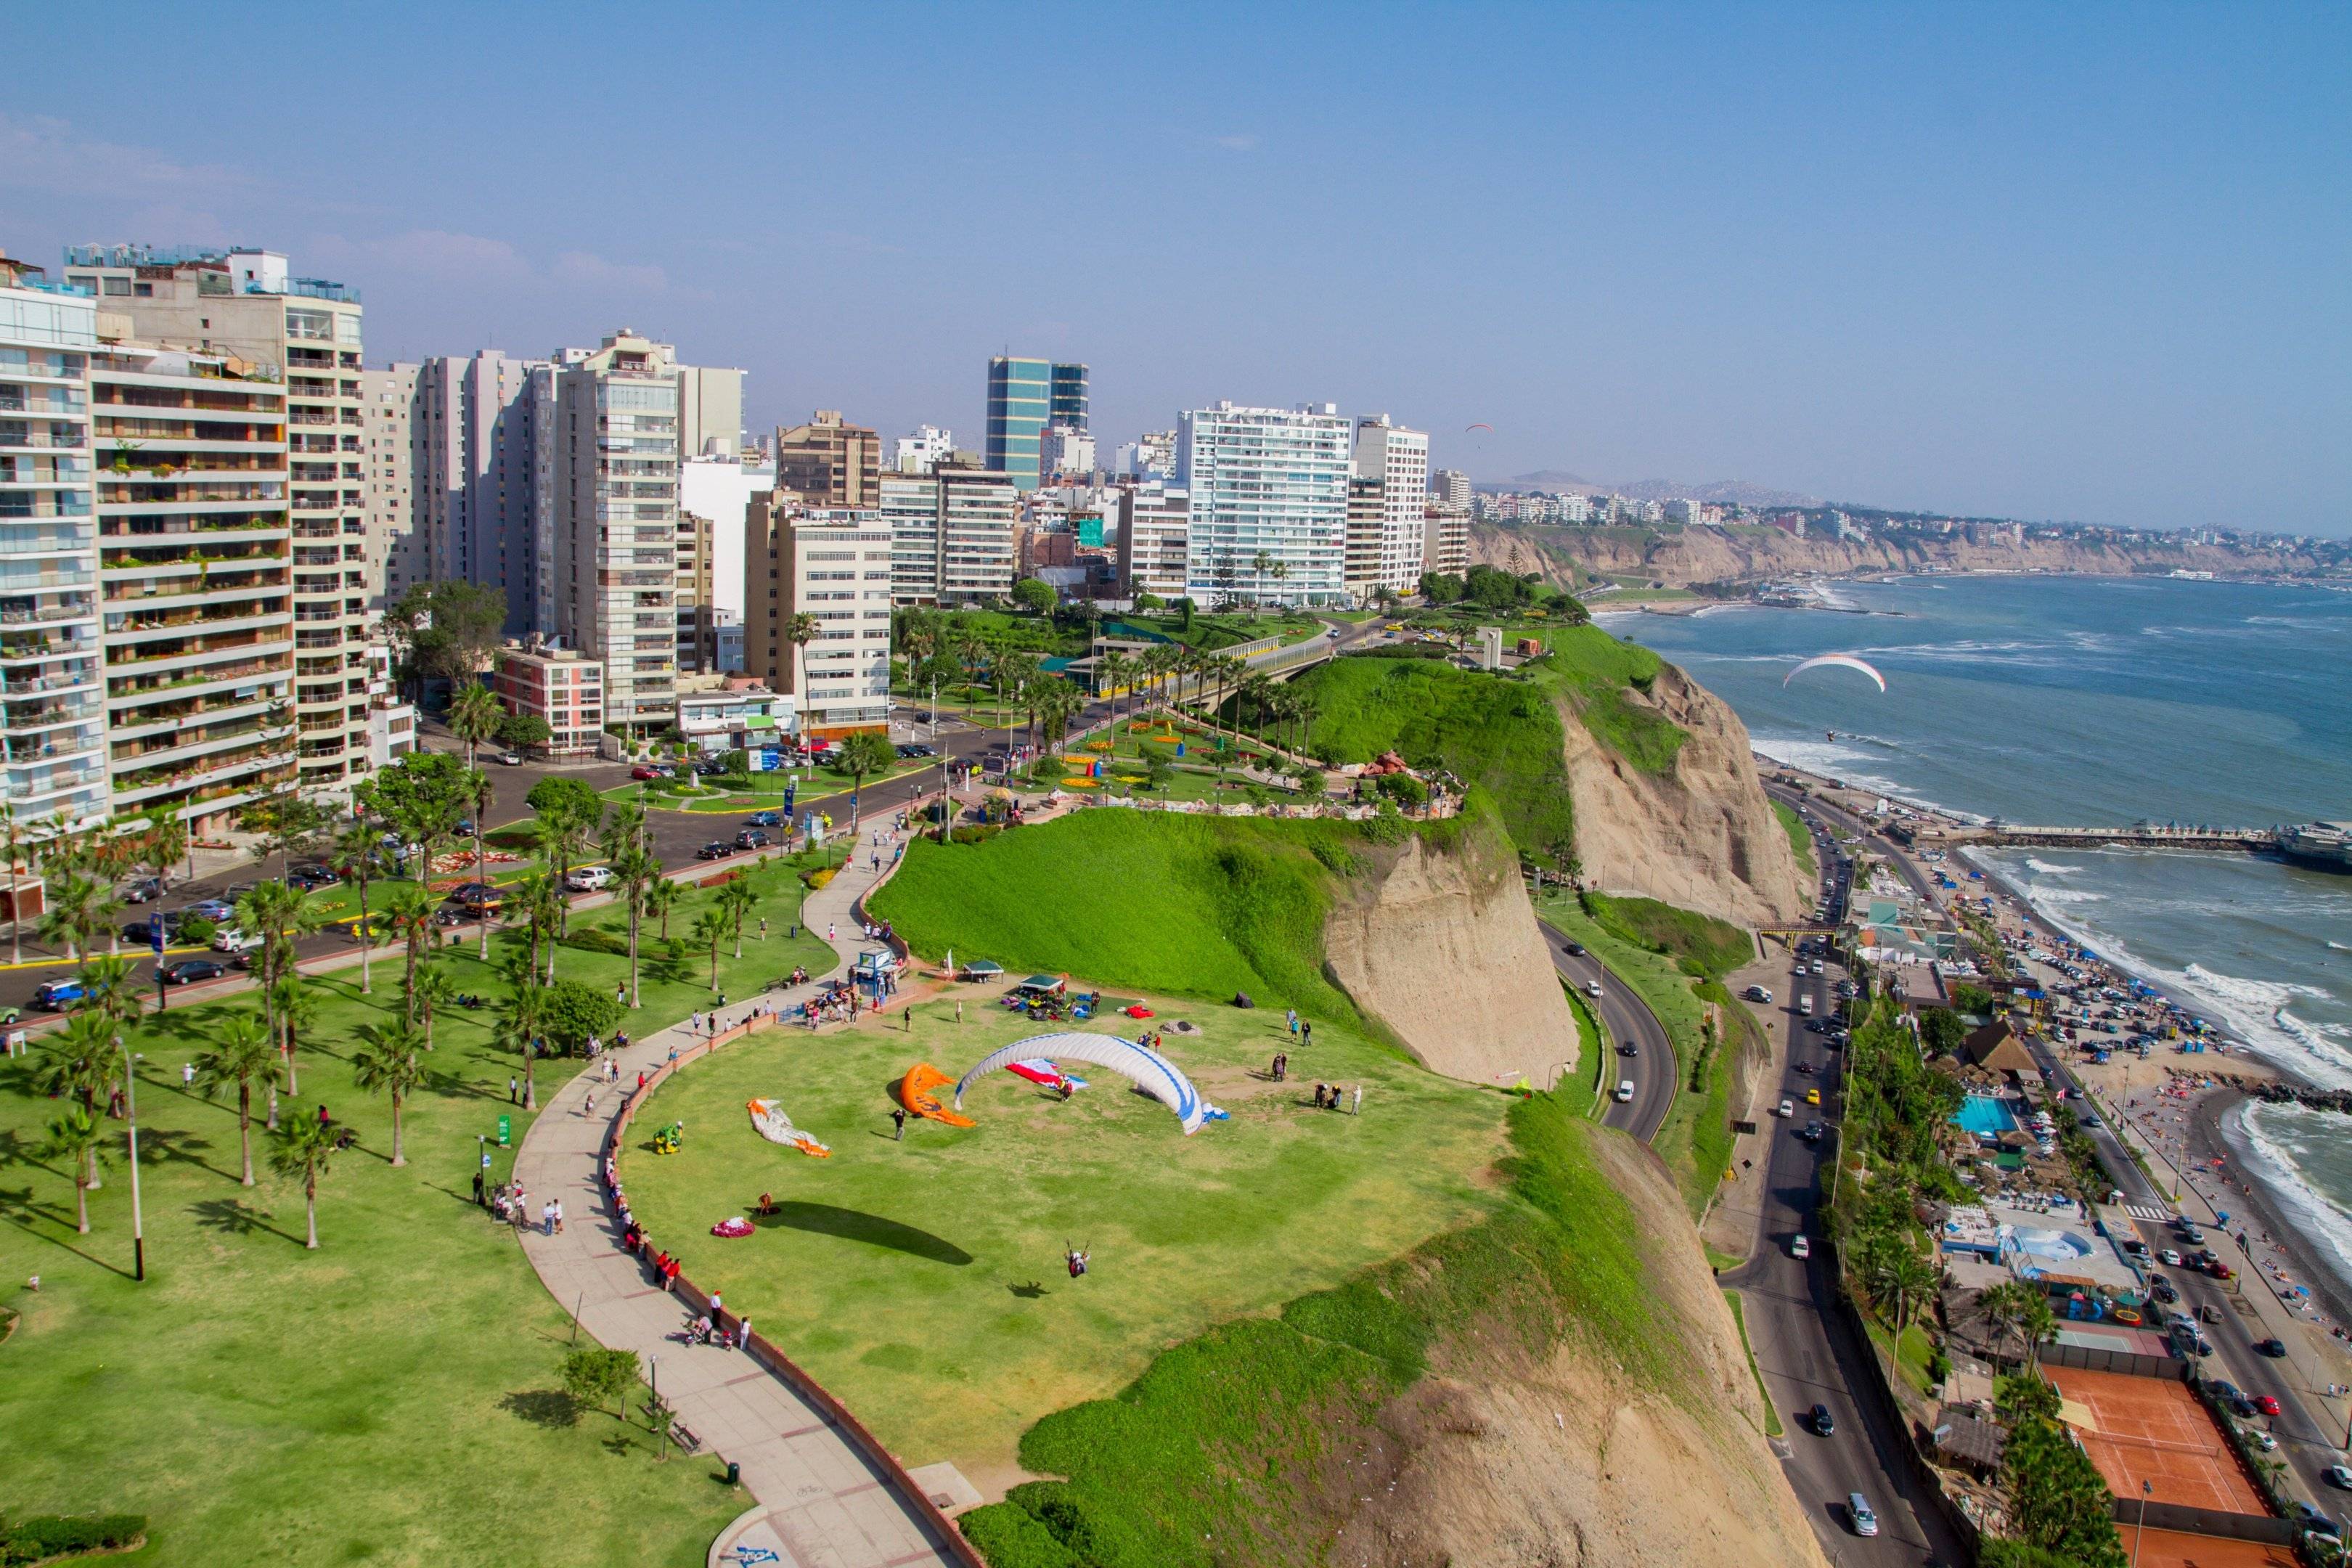 Stadtbesichtigung: Lima modern & kolonial erleben